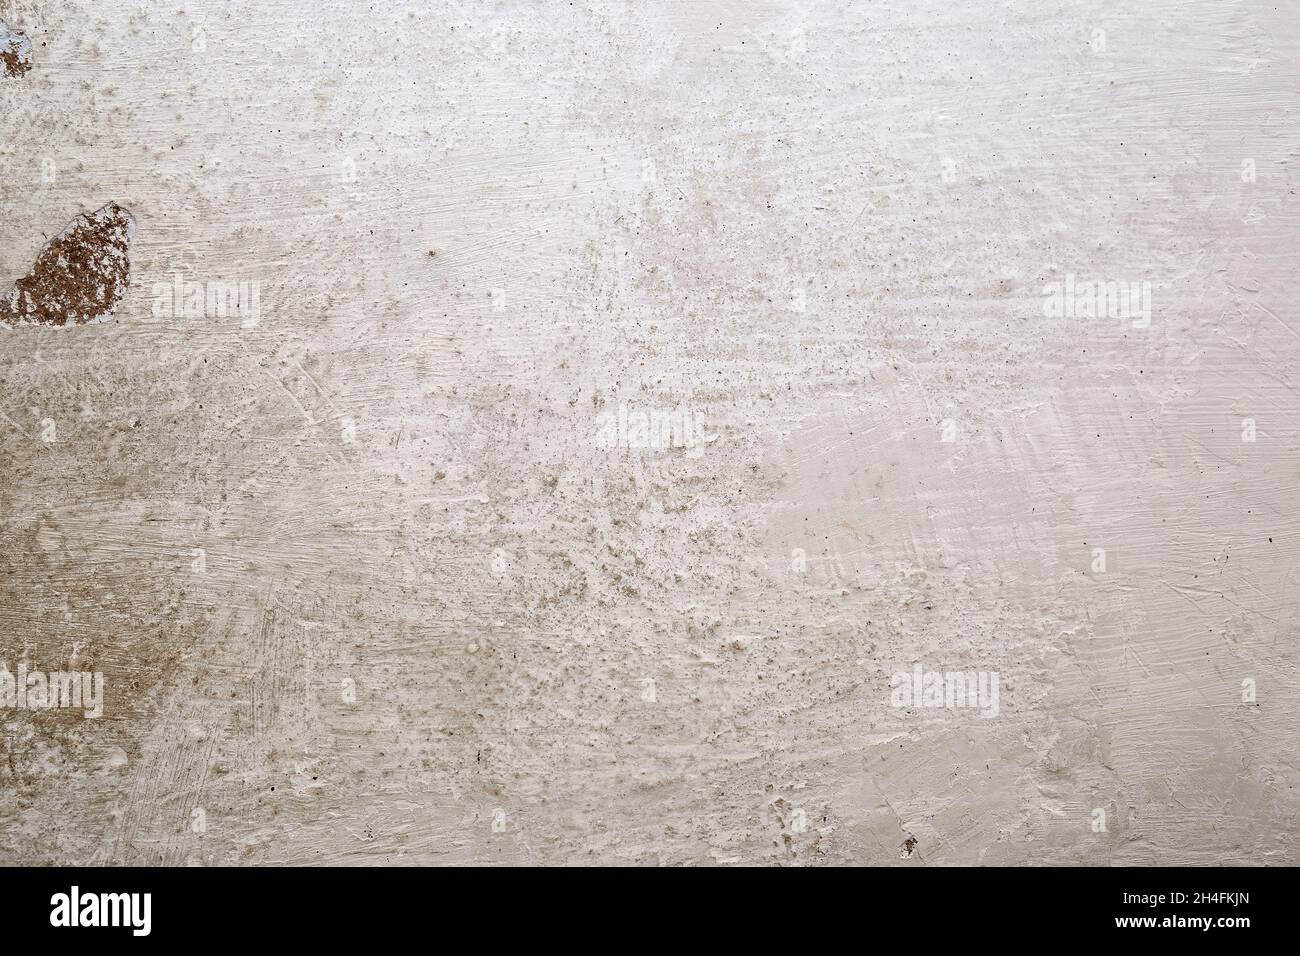 Texture du mur blanchi à la chaux avec des éraflures, des rayures et des taches sales Banque D'Images